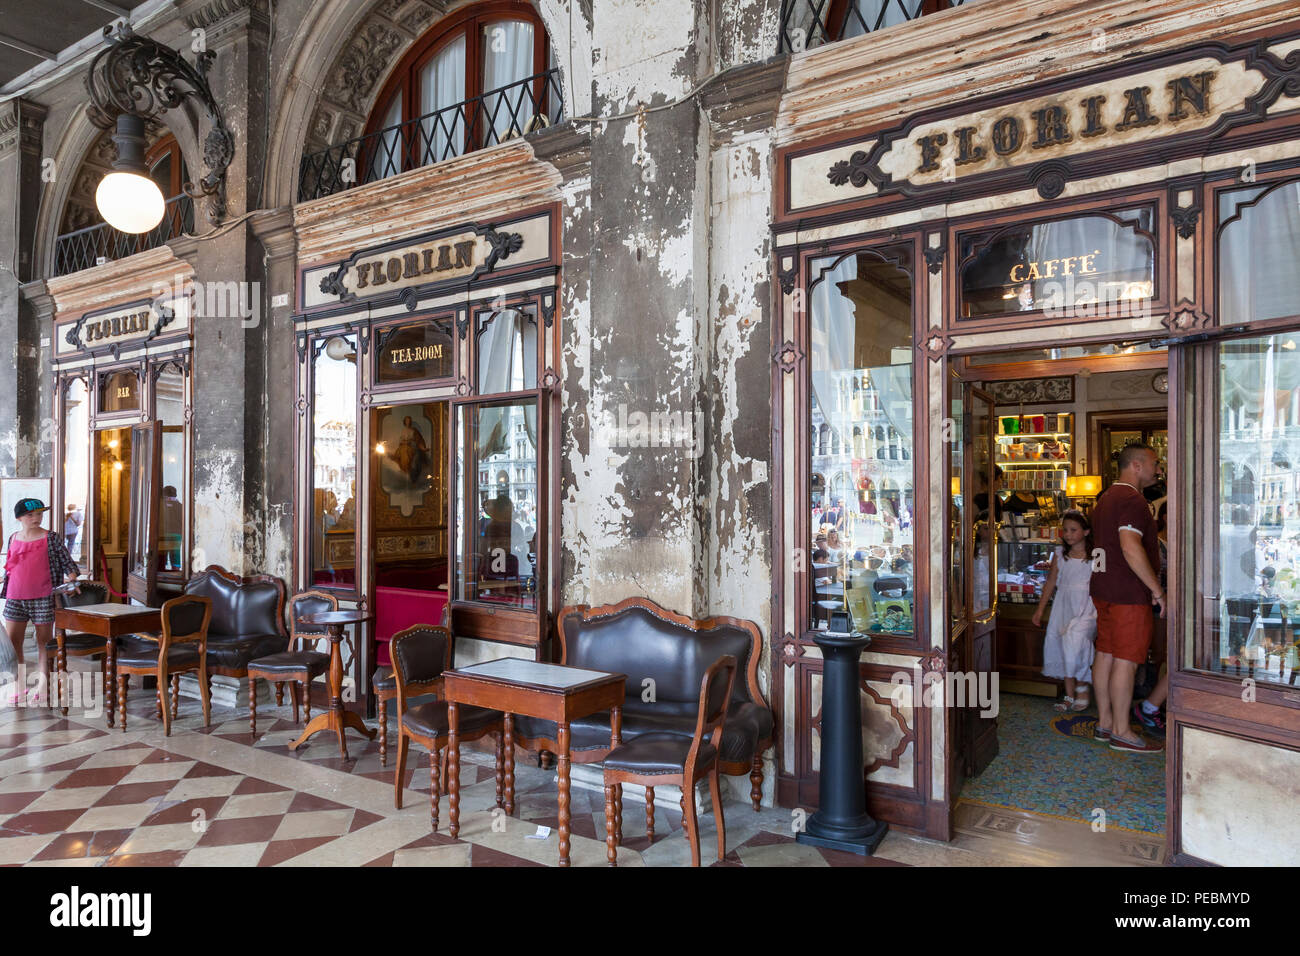 La facciata esterna Caffè Florian e Piazza San Marco, San Marco, Venezia, Veneto, Italia. Aperto nel 1720, è la più antica cafe nel mondo. Le persone all'interno Foto Stock